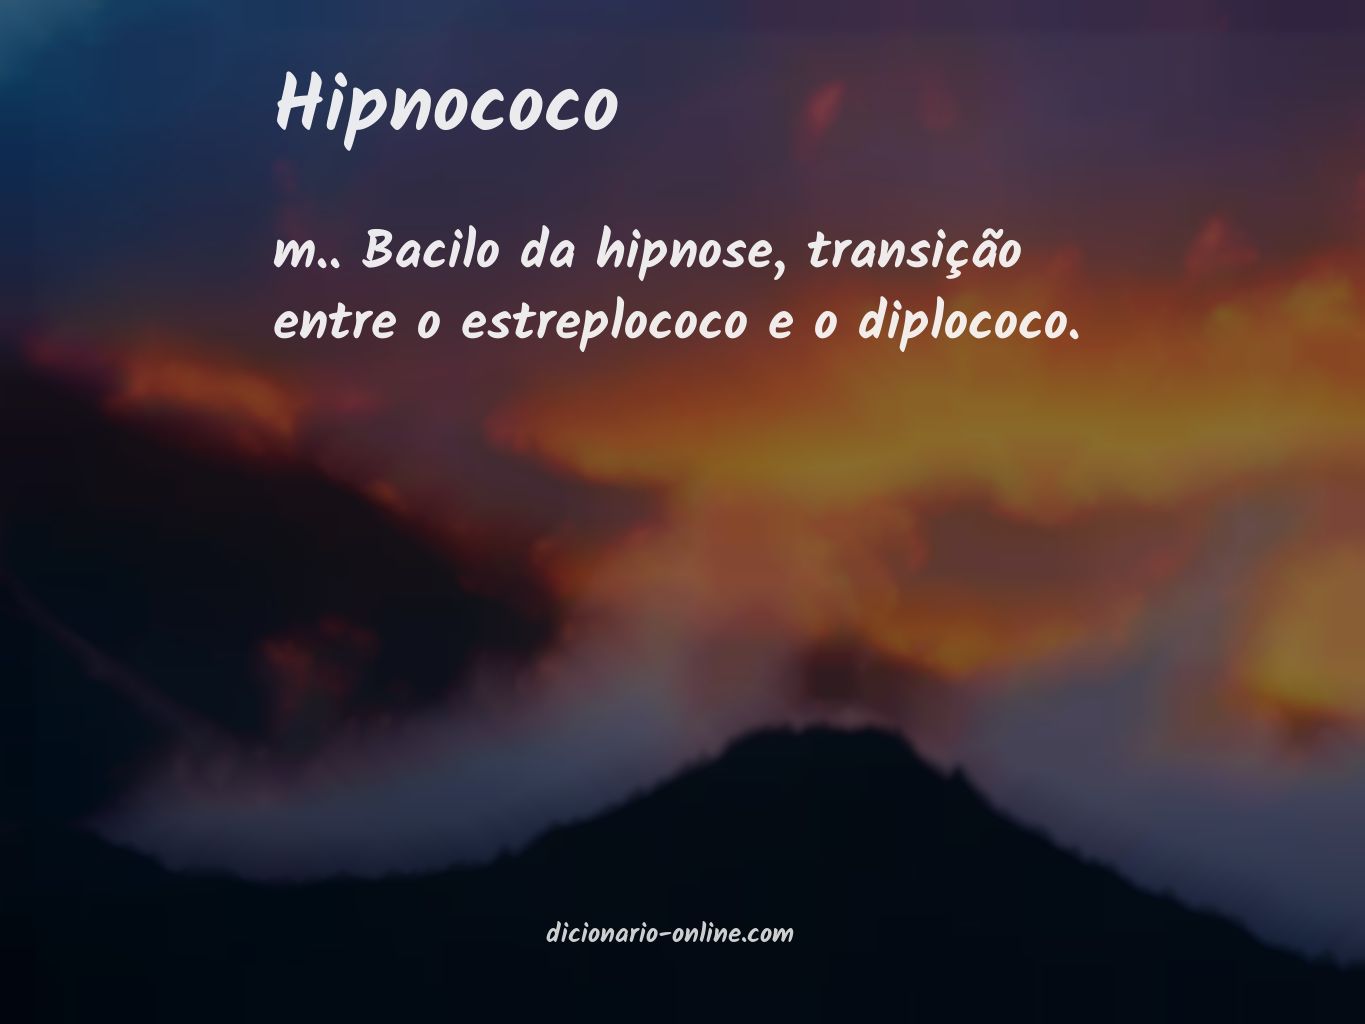 Significado de hipnococo